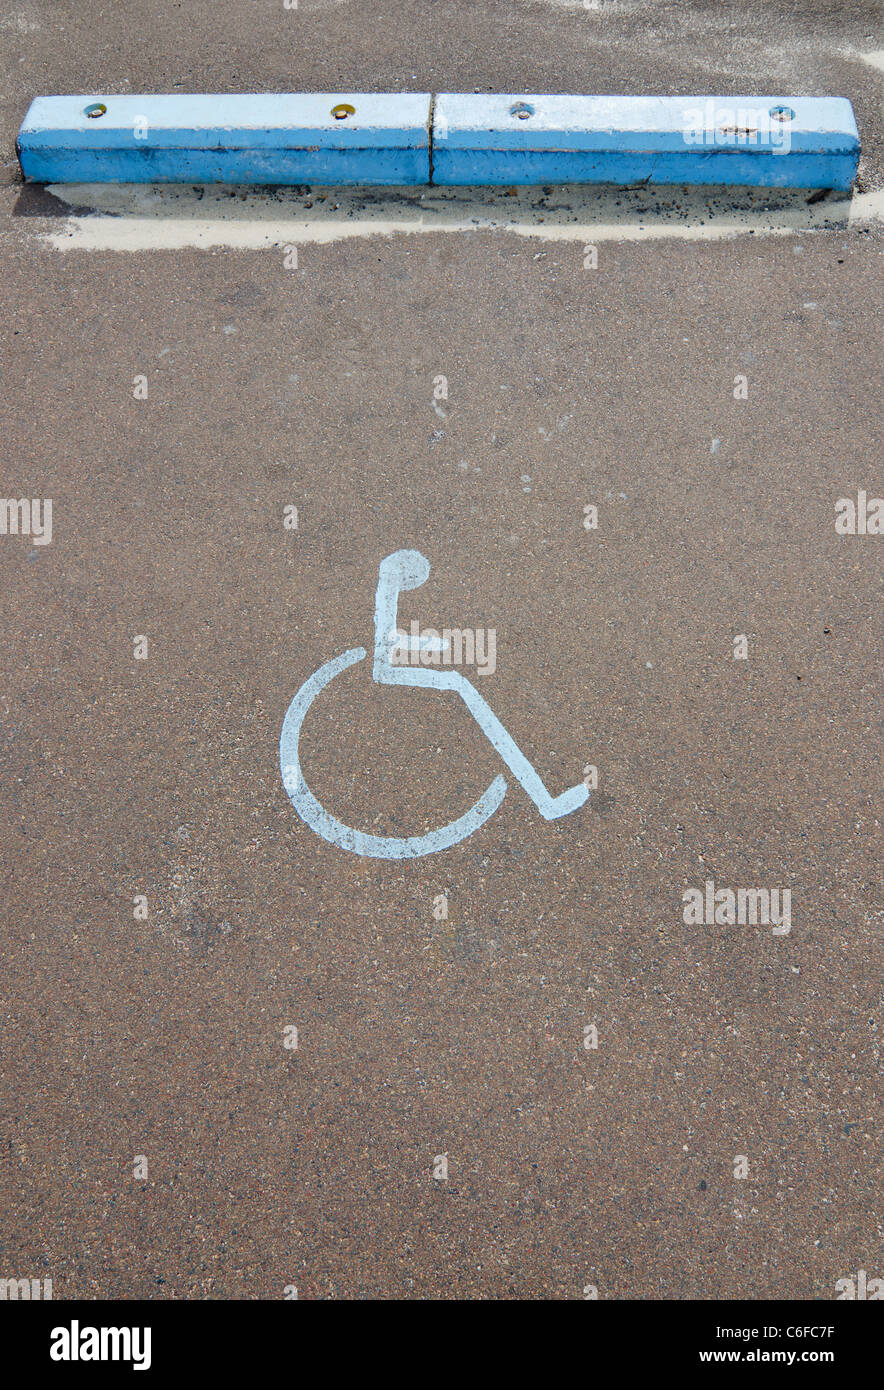 Symbole de stationnement pour personnes handicapées à un parking en bord de mer en Australie Banque D'Images